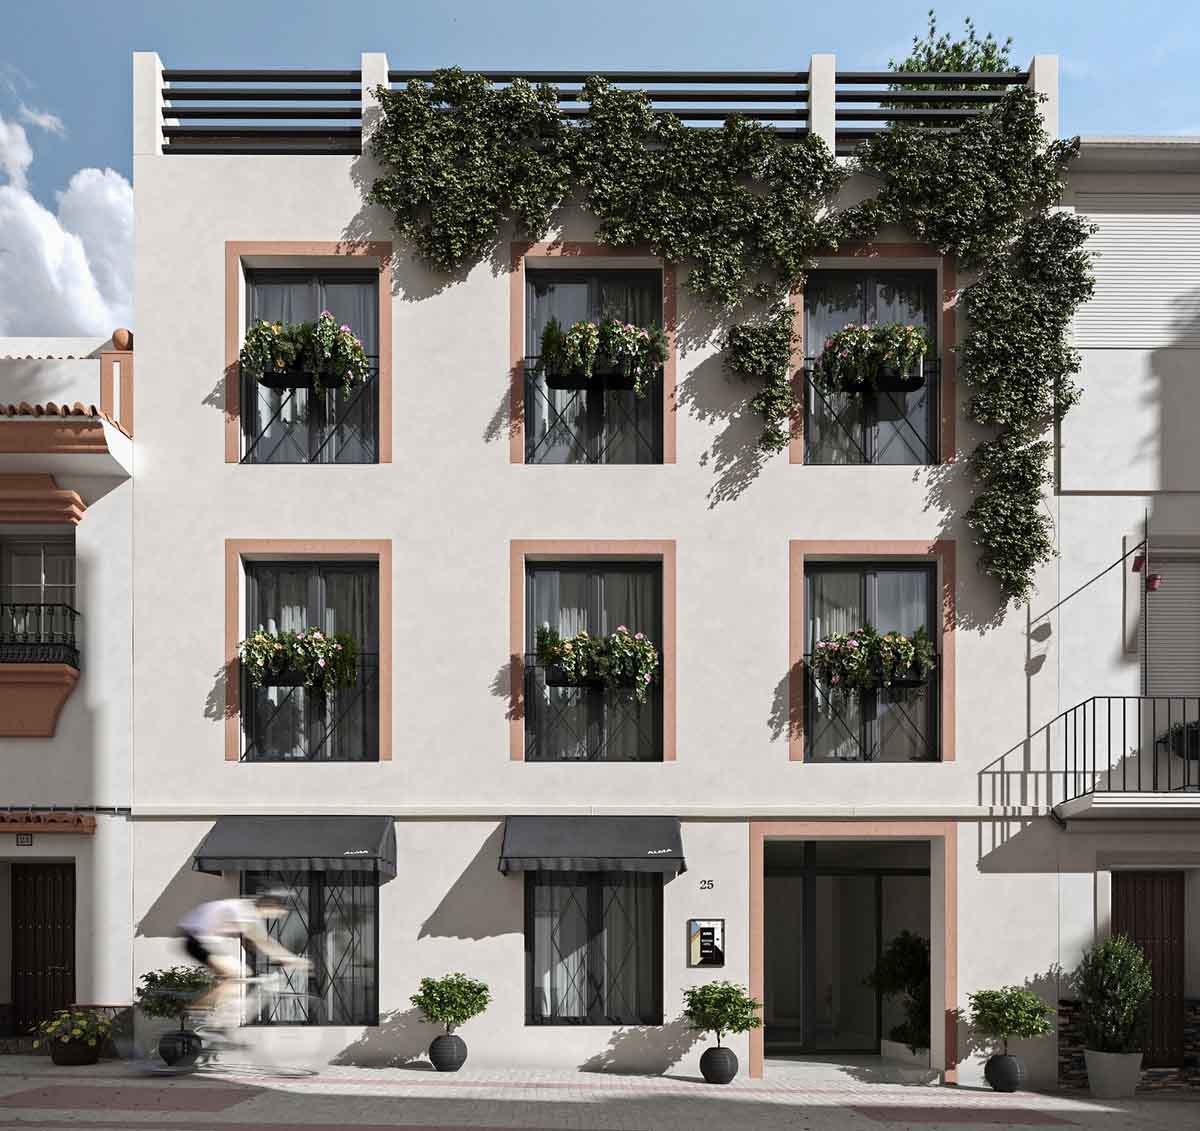 New hotel in Marbella